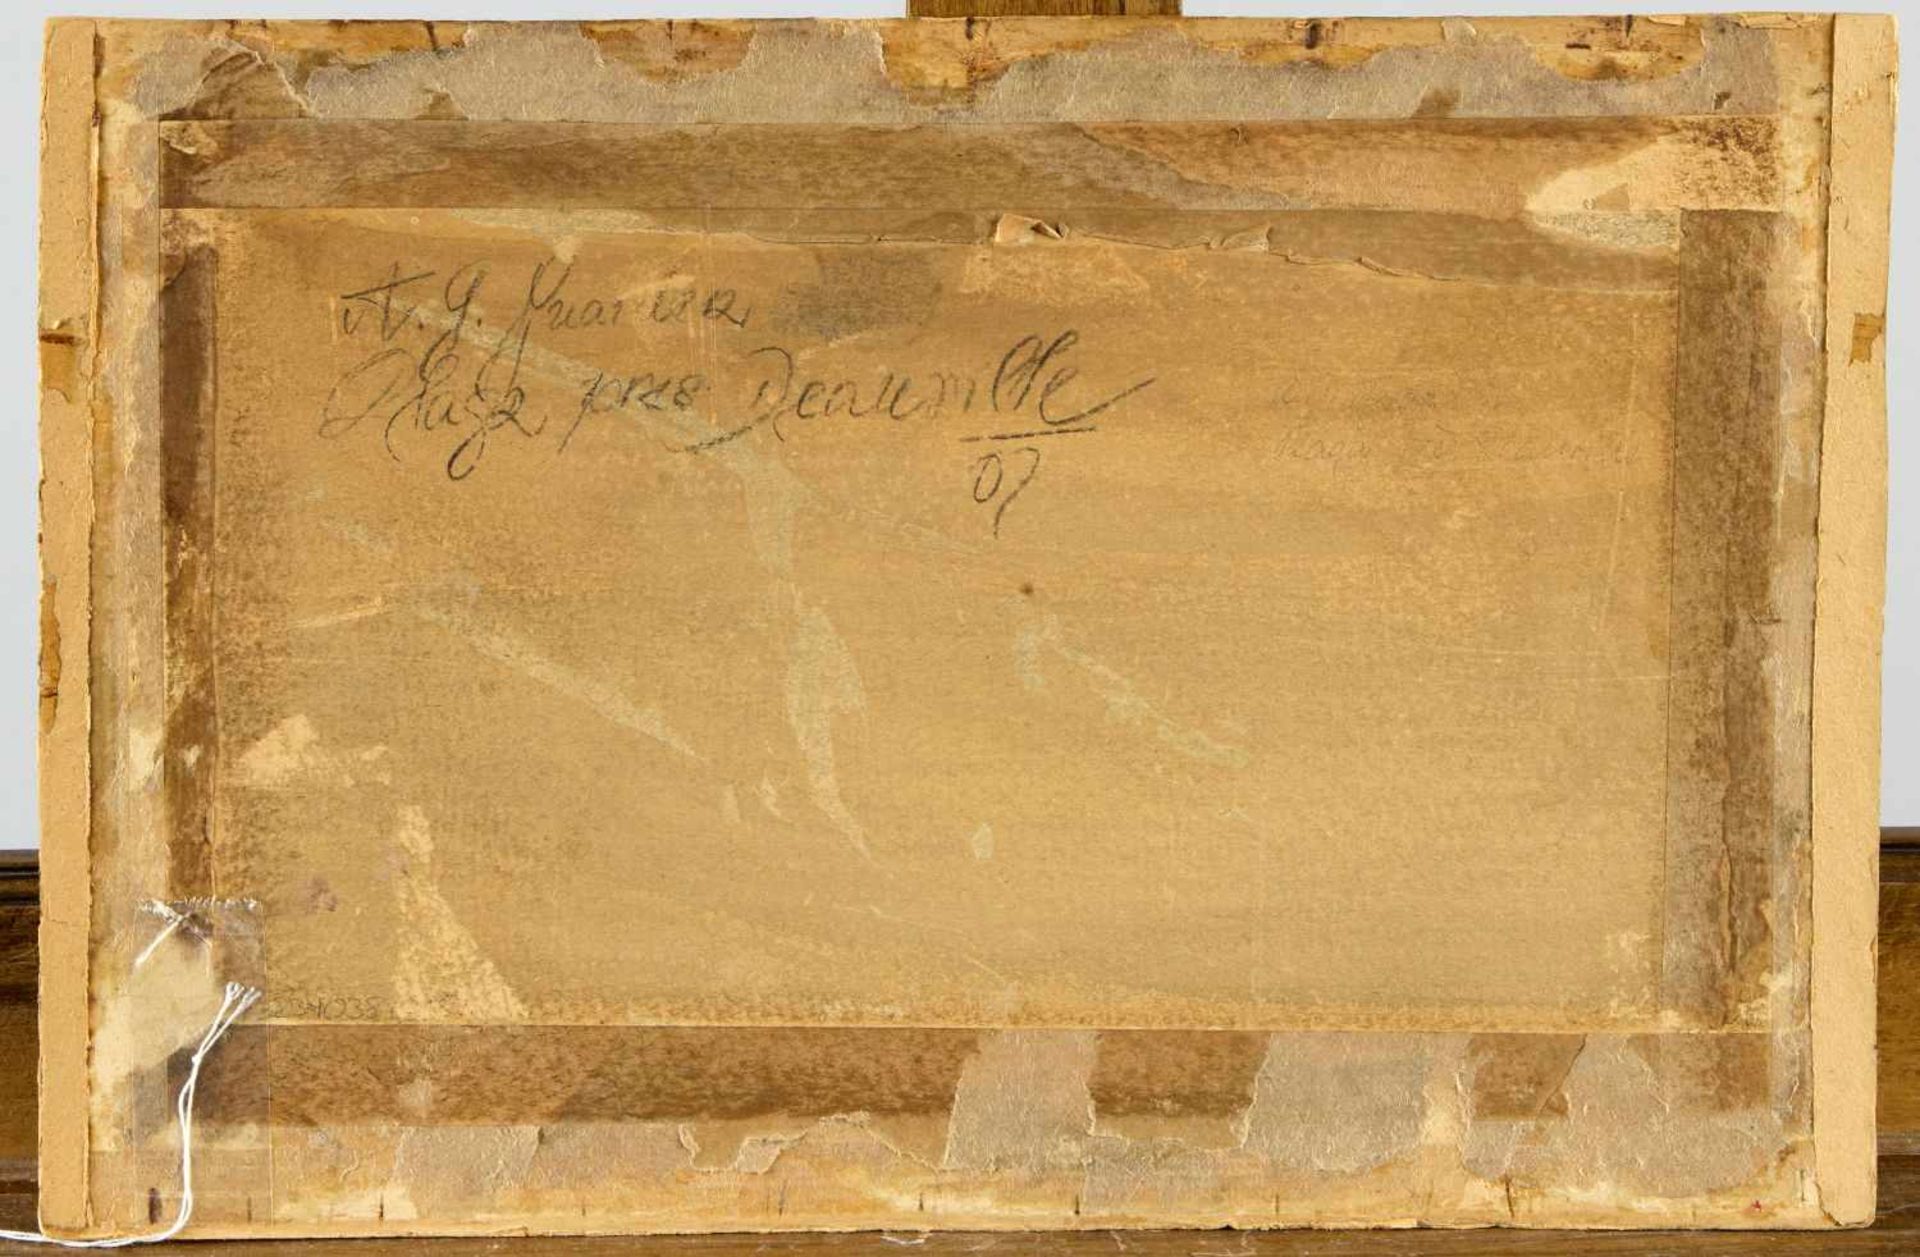 Guarde, A.G.Plage pres Deauville. Öl/Karton. 22,5 x 34 cm. - Bild 2 aus 2